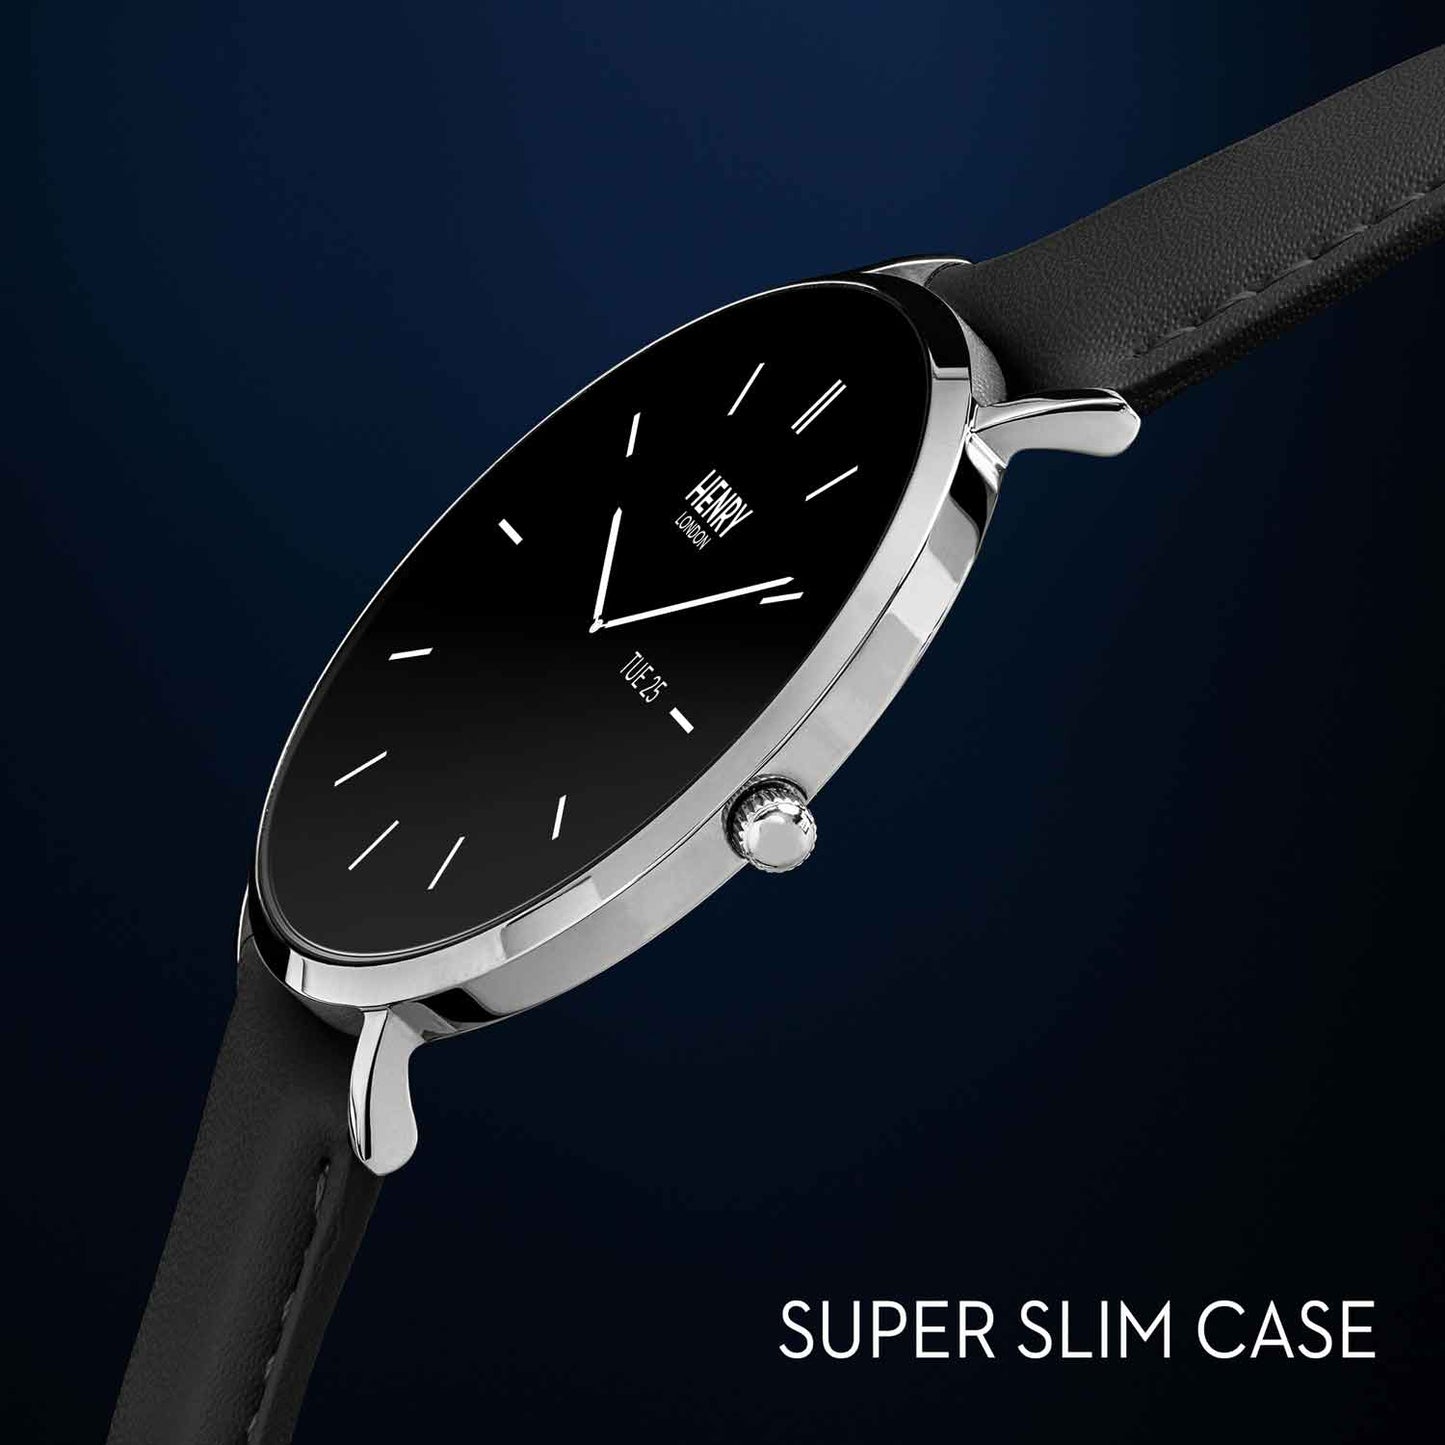 Henry London HLS65-0009 Smartwatch Black Leather Strap